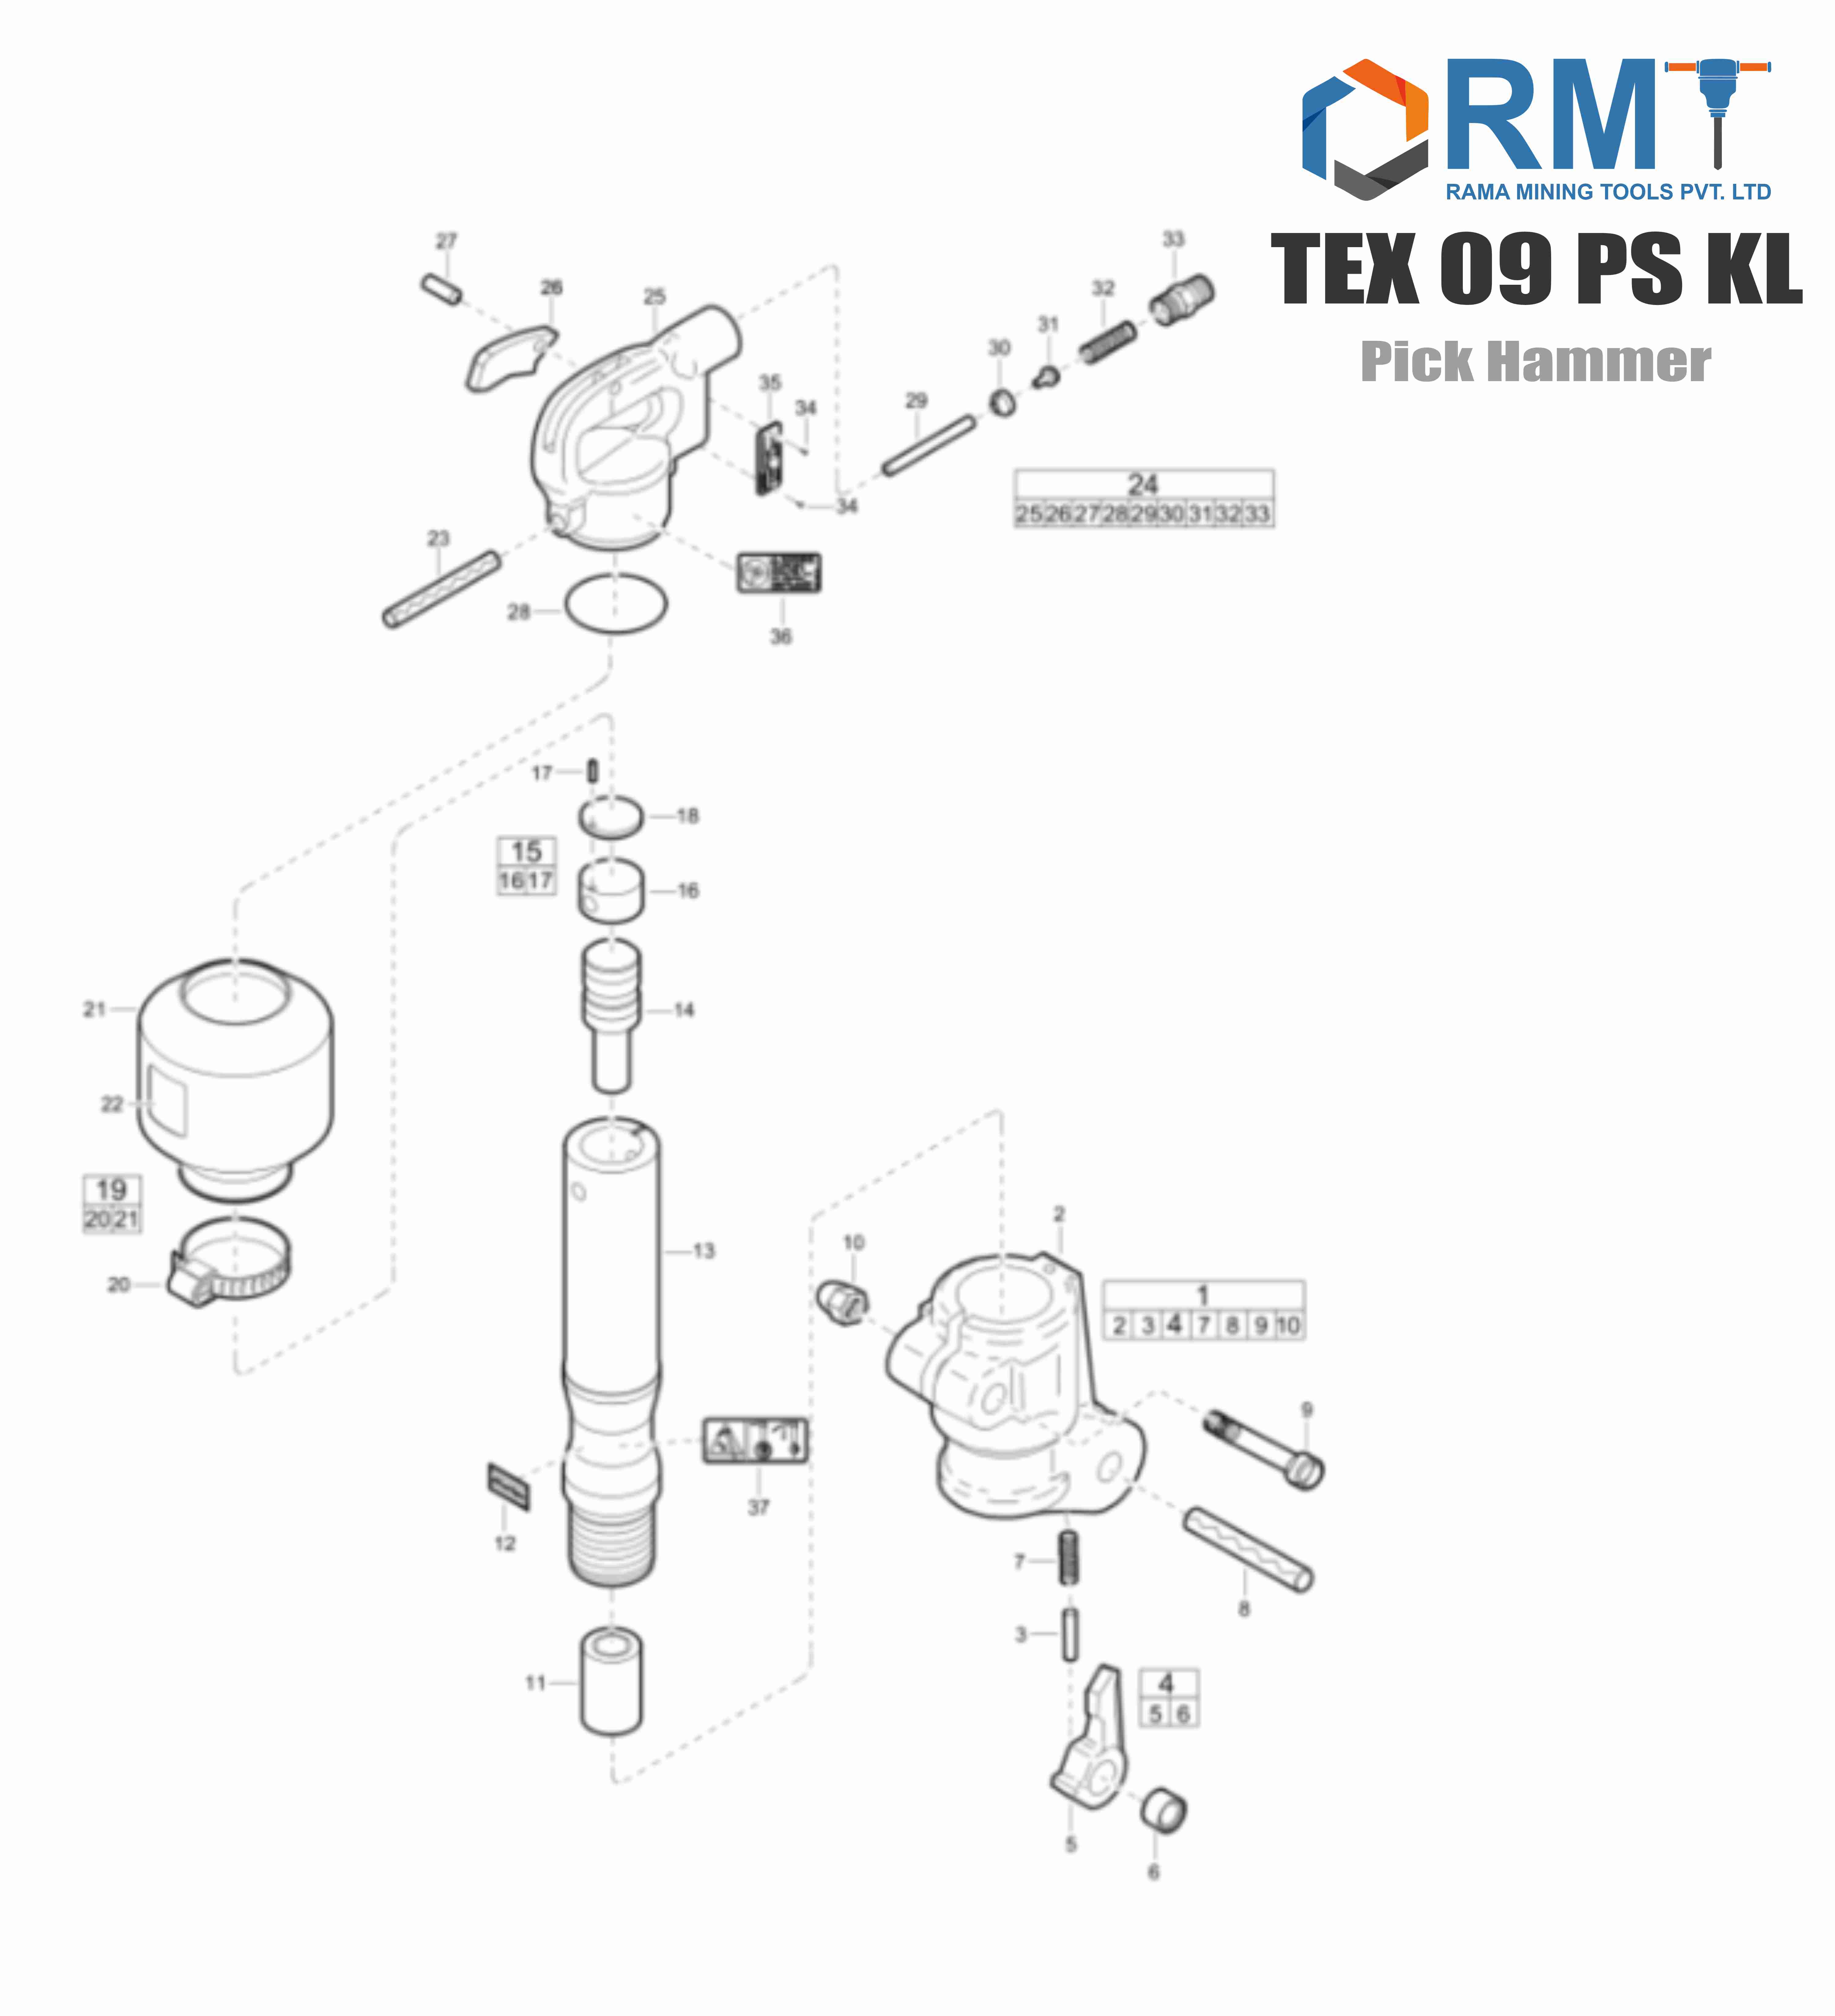 TEX 09 PS KL - Pick Hammer